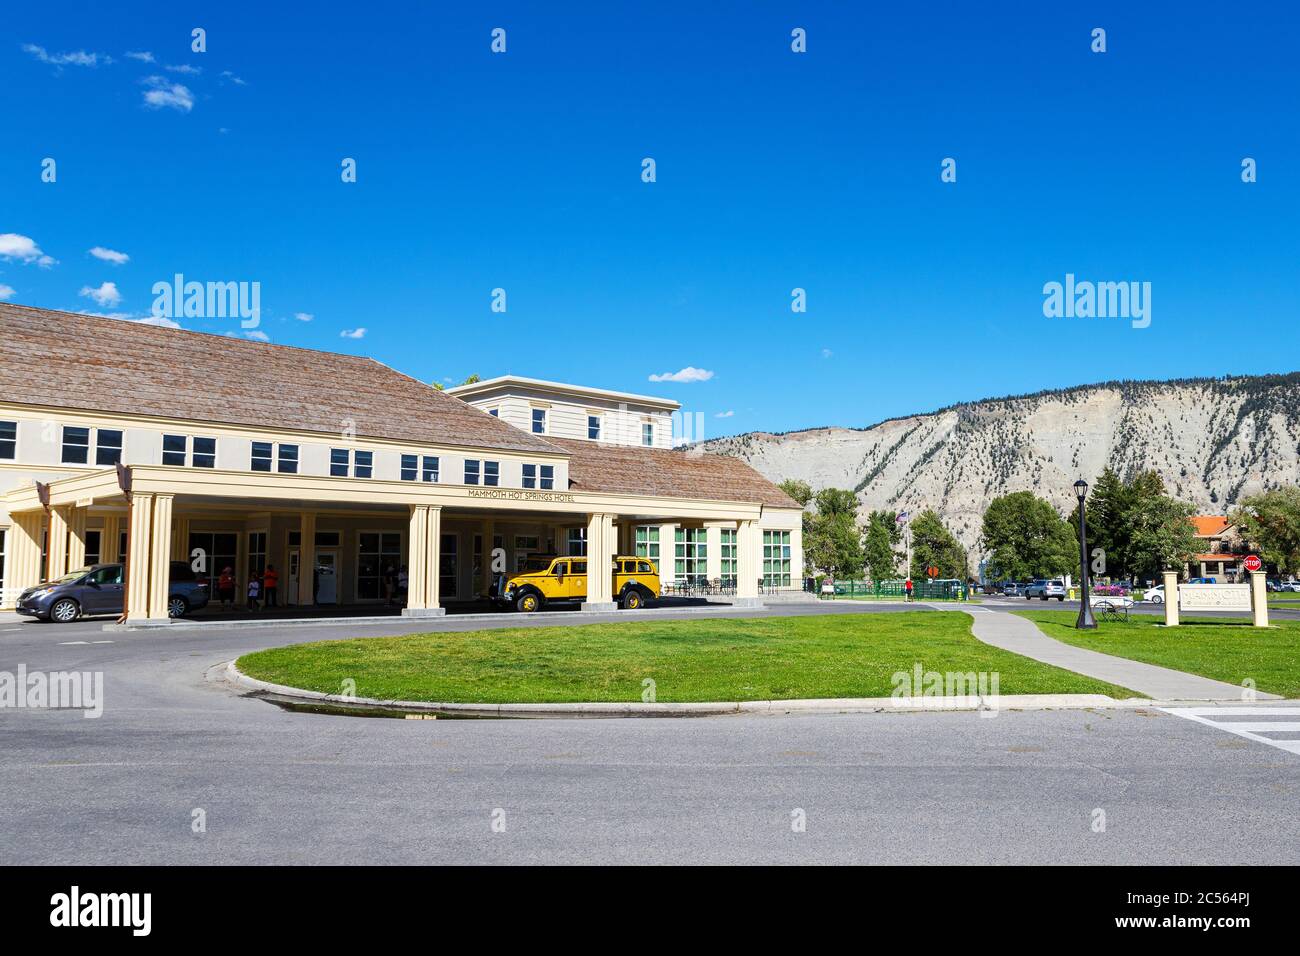 Wyoming, États-Unis - 28 août 2019 : l'hôtel Mammoth Hot Springs est un hôtel historique construit en 1936 et nommé d'après les sources proches du parc national de Yellowstone. Banque D'Images